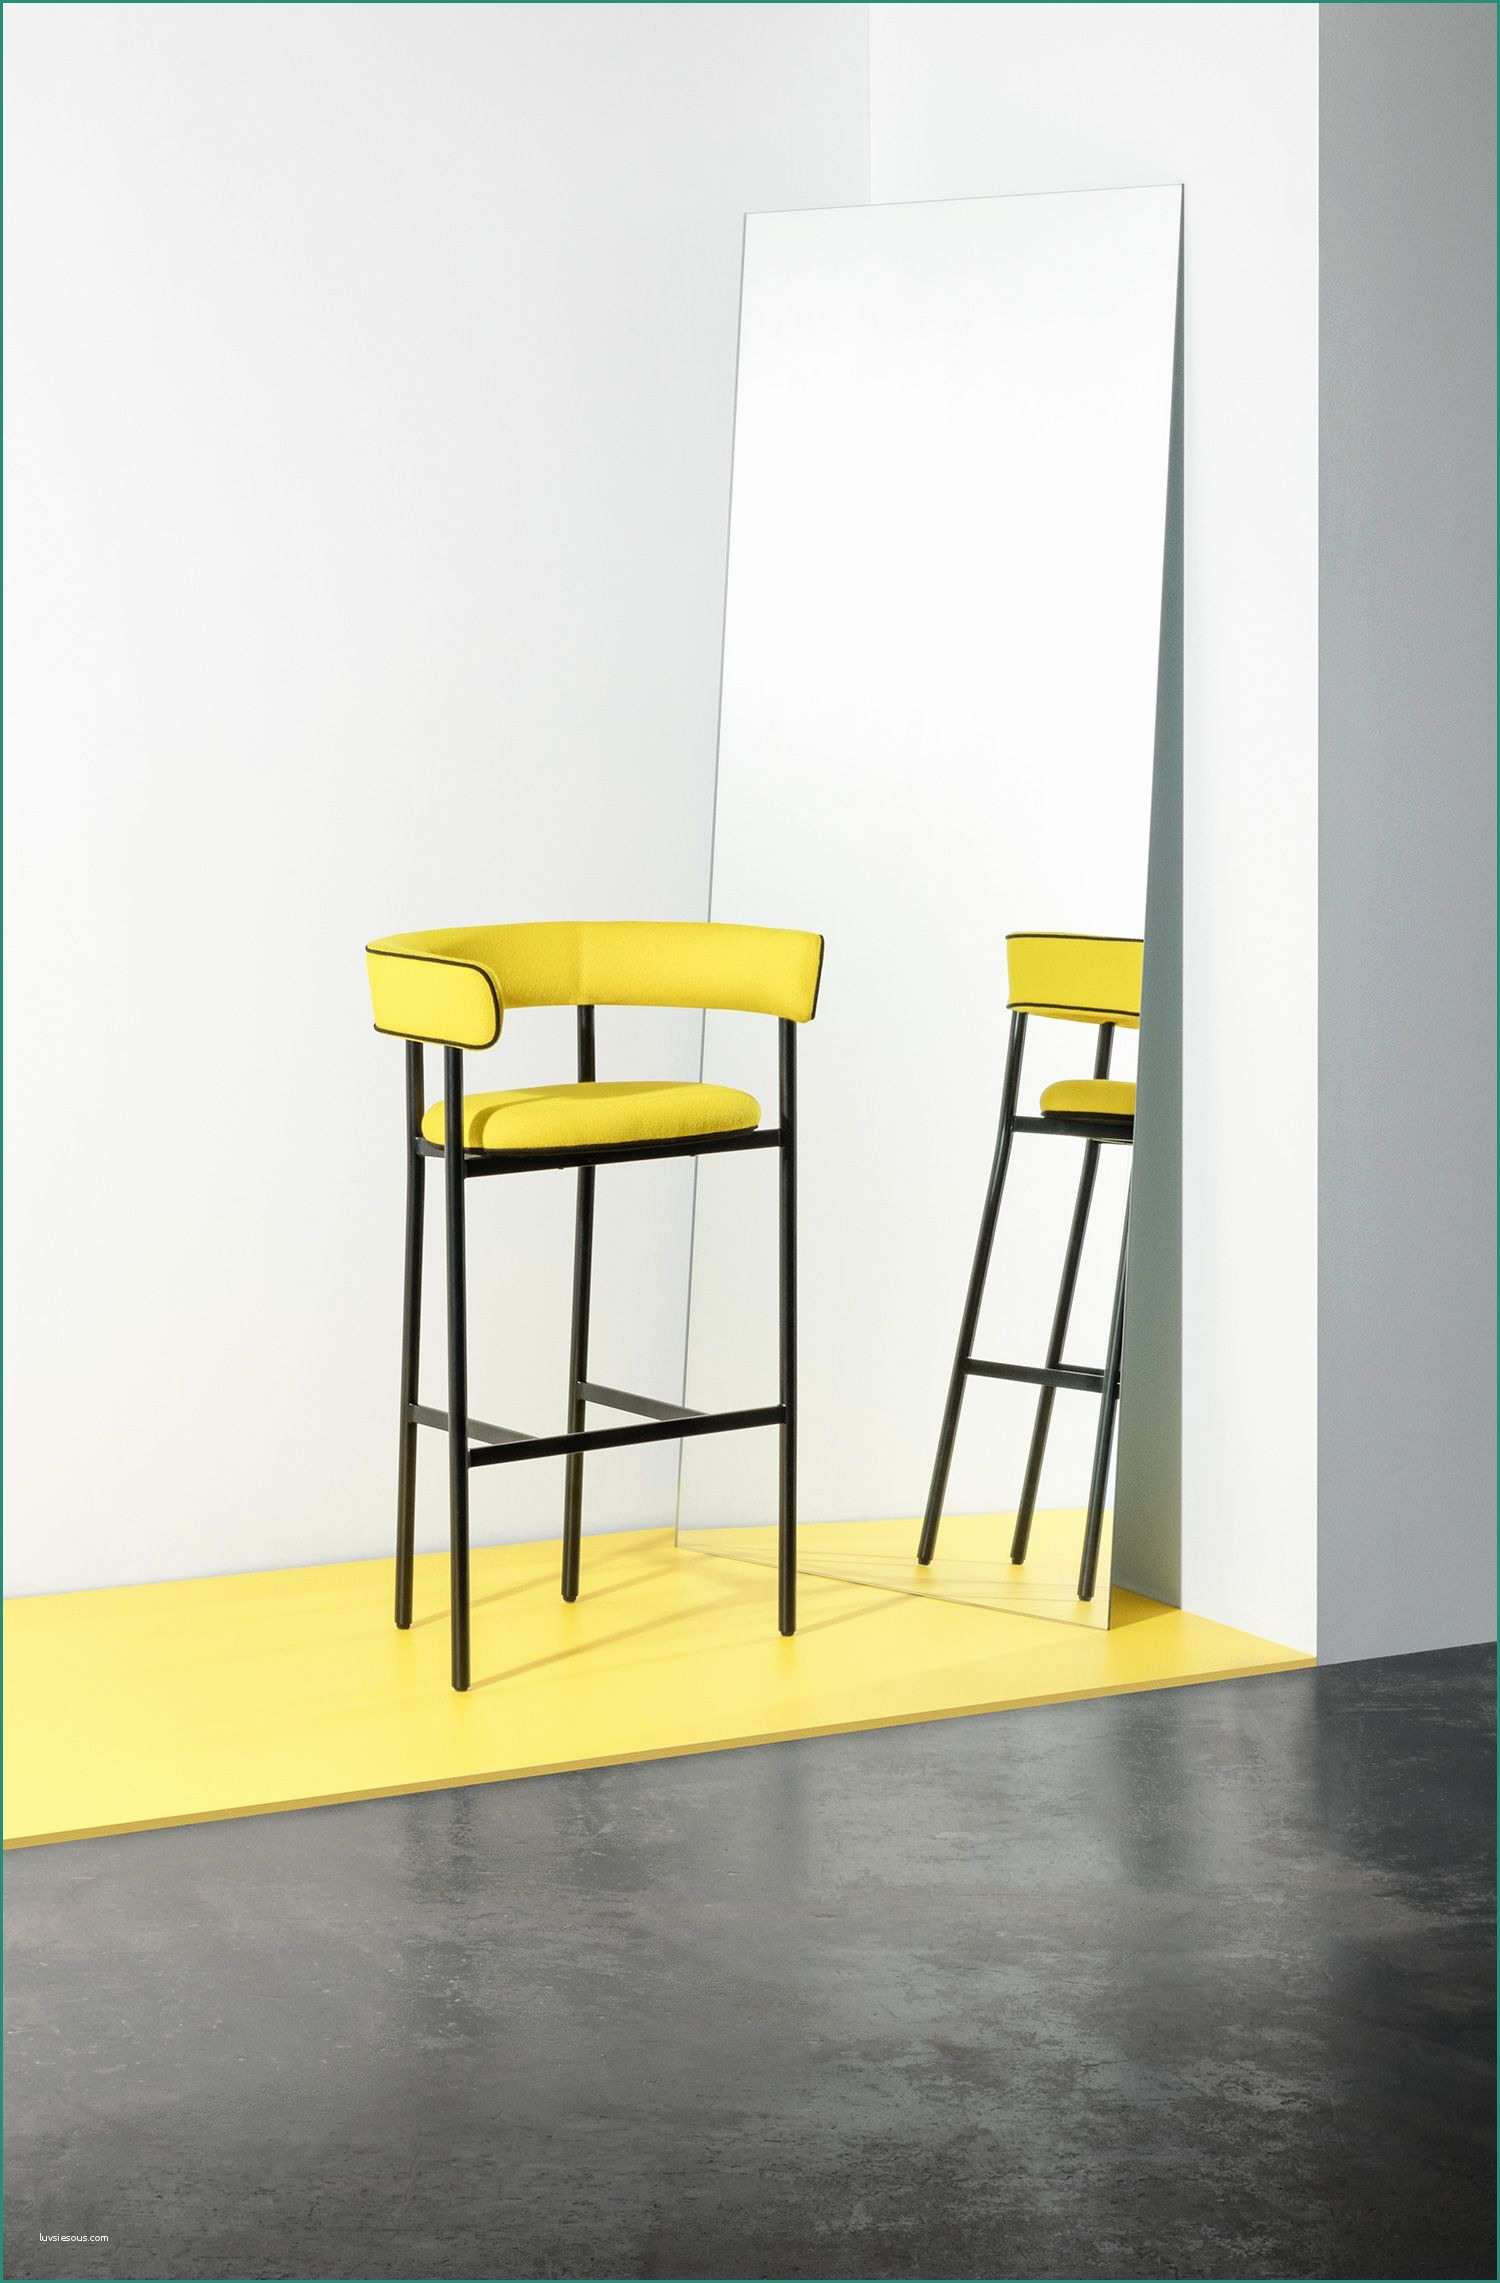 Tavoli Alti Da Bar E Best Of Imm Cologne 2018 Design Fair Chair and Armchair